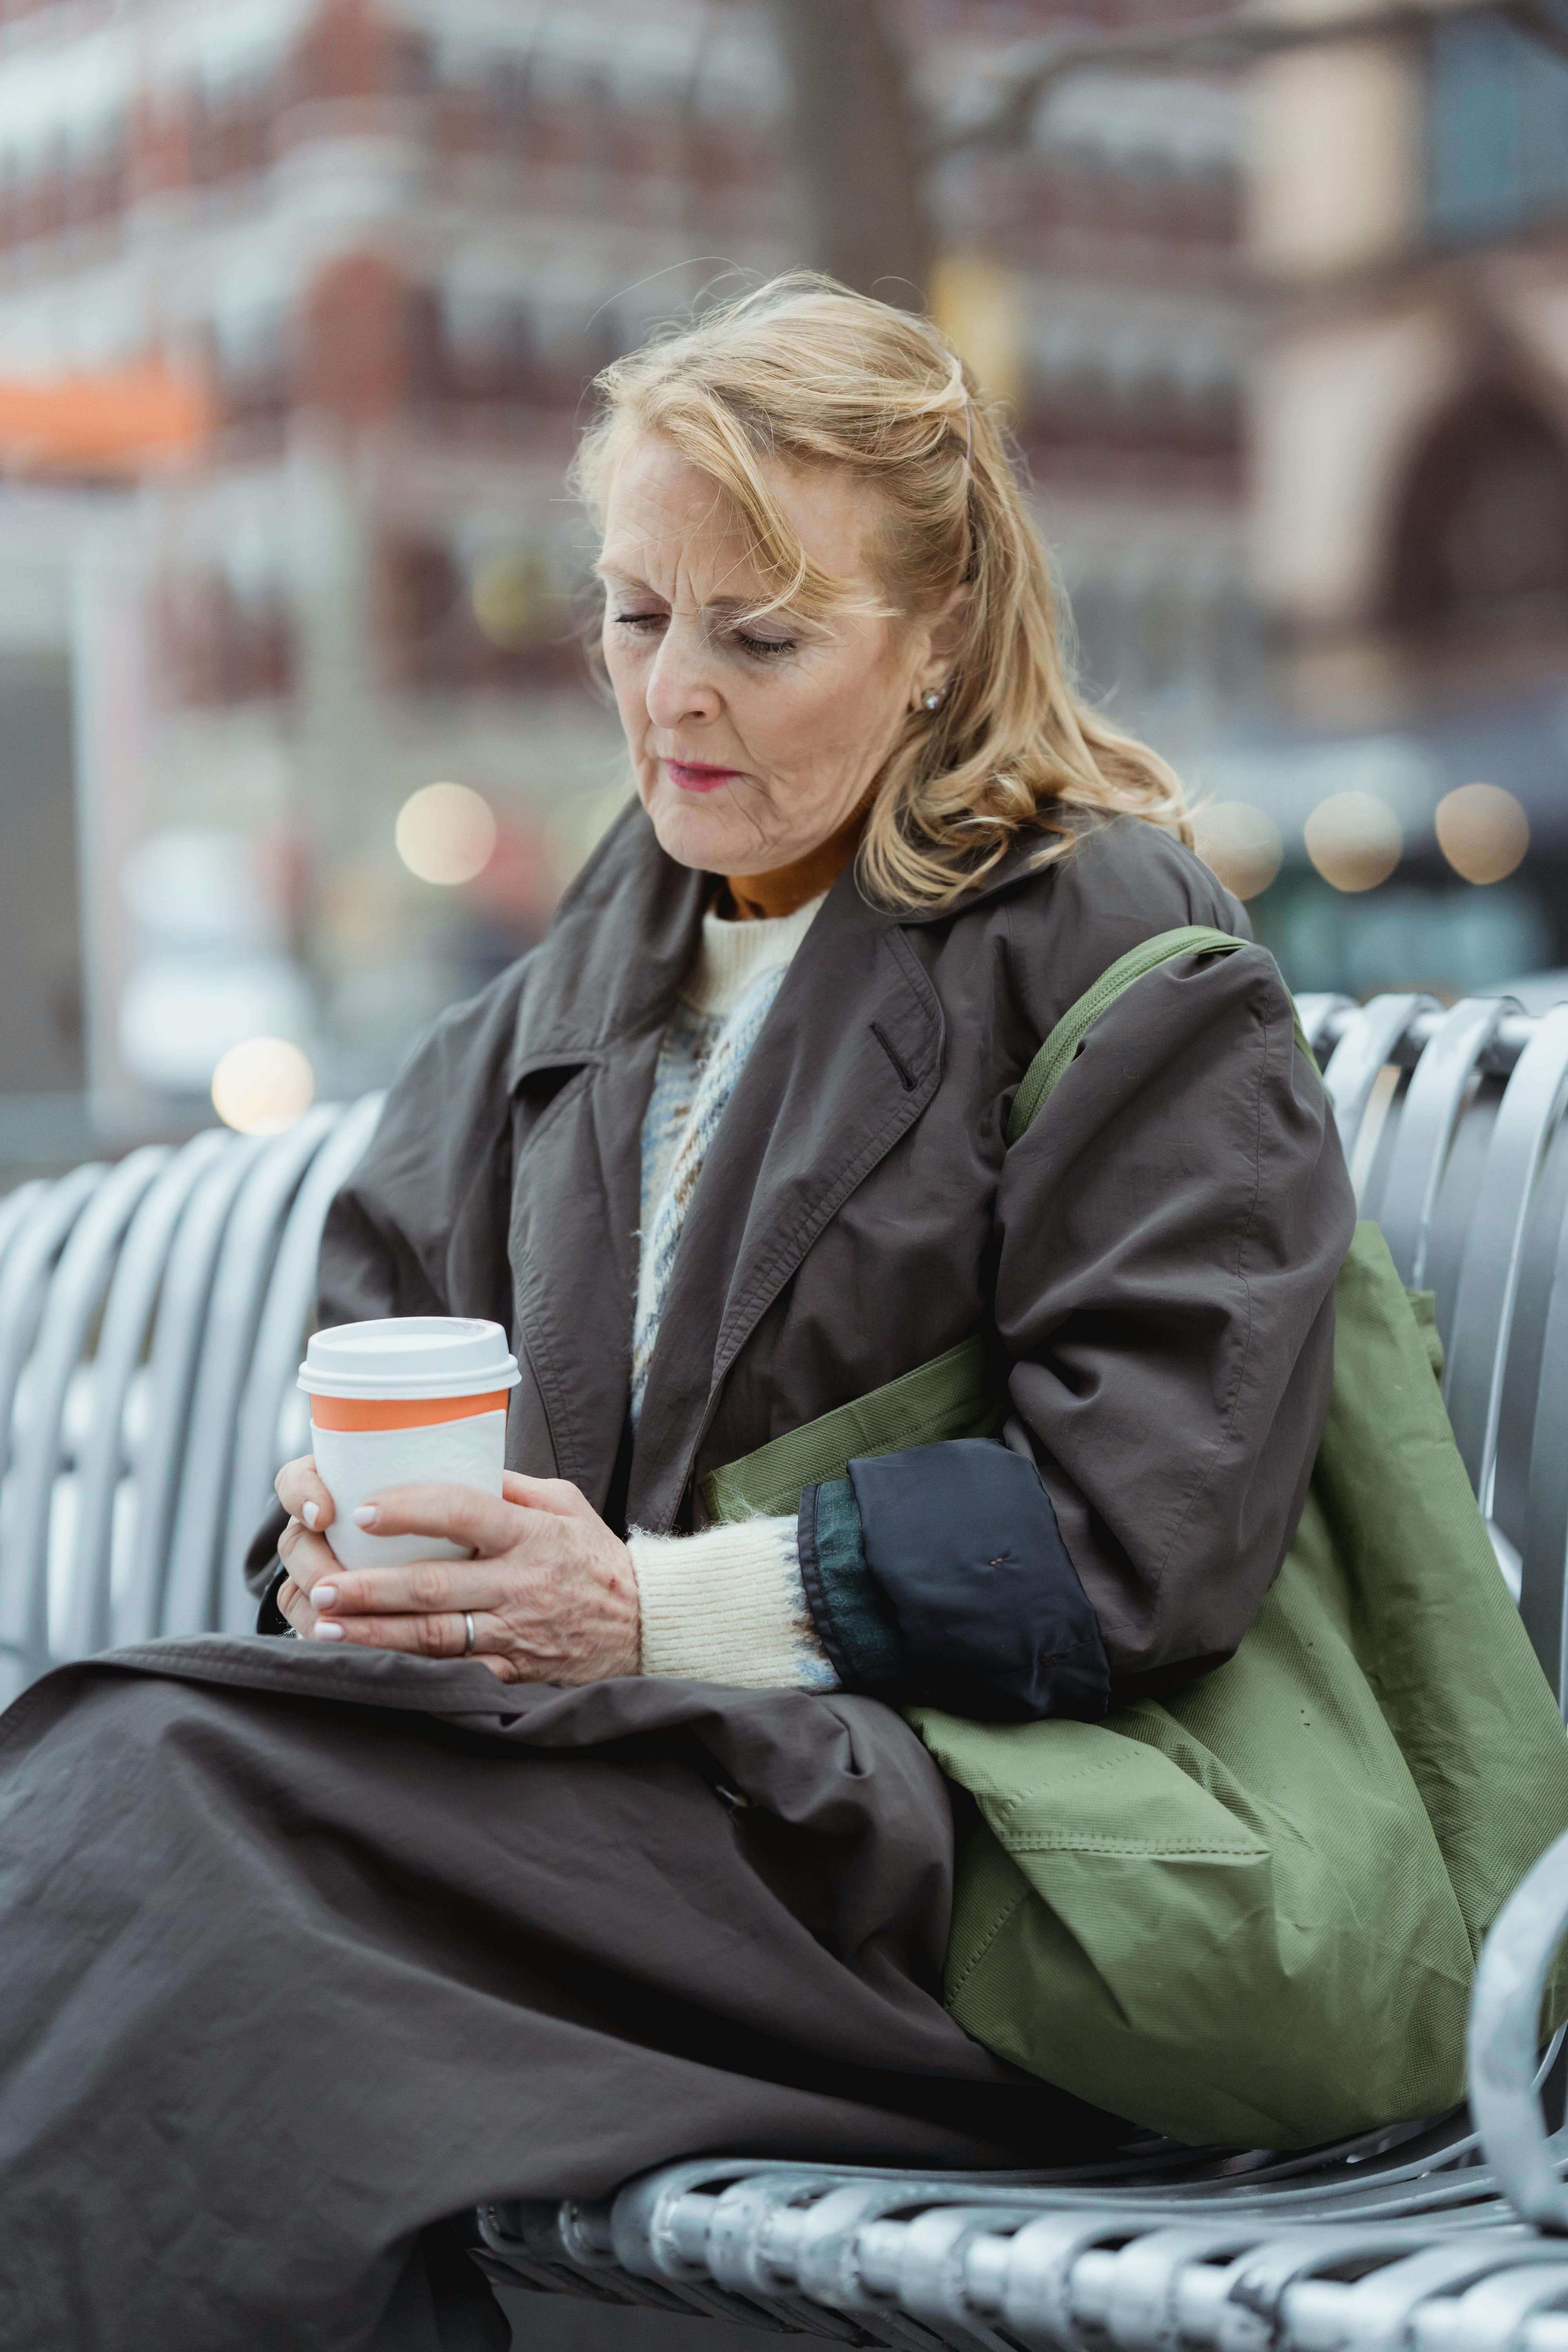 Eine aufgebrachte ältere Frau mit einem Getränk in der Hand, während sie auf einer Bank im Freien sitzt | Quelle: Pexels